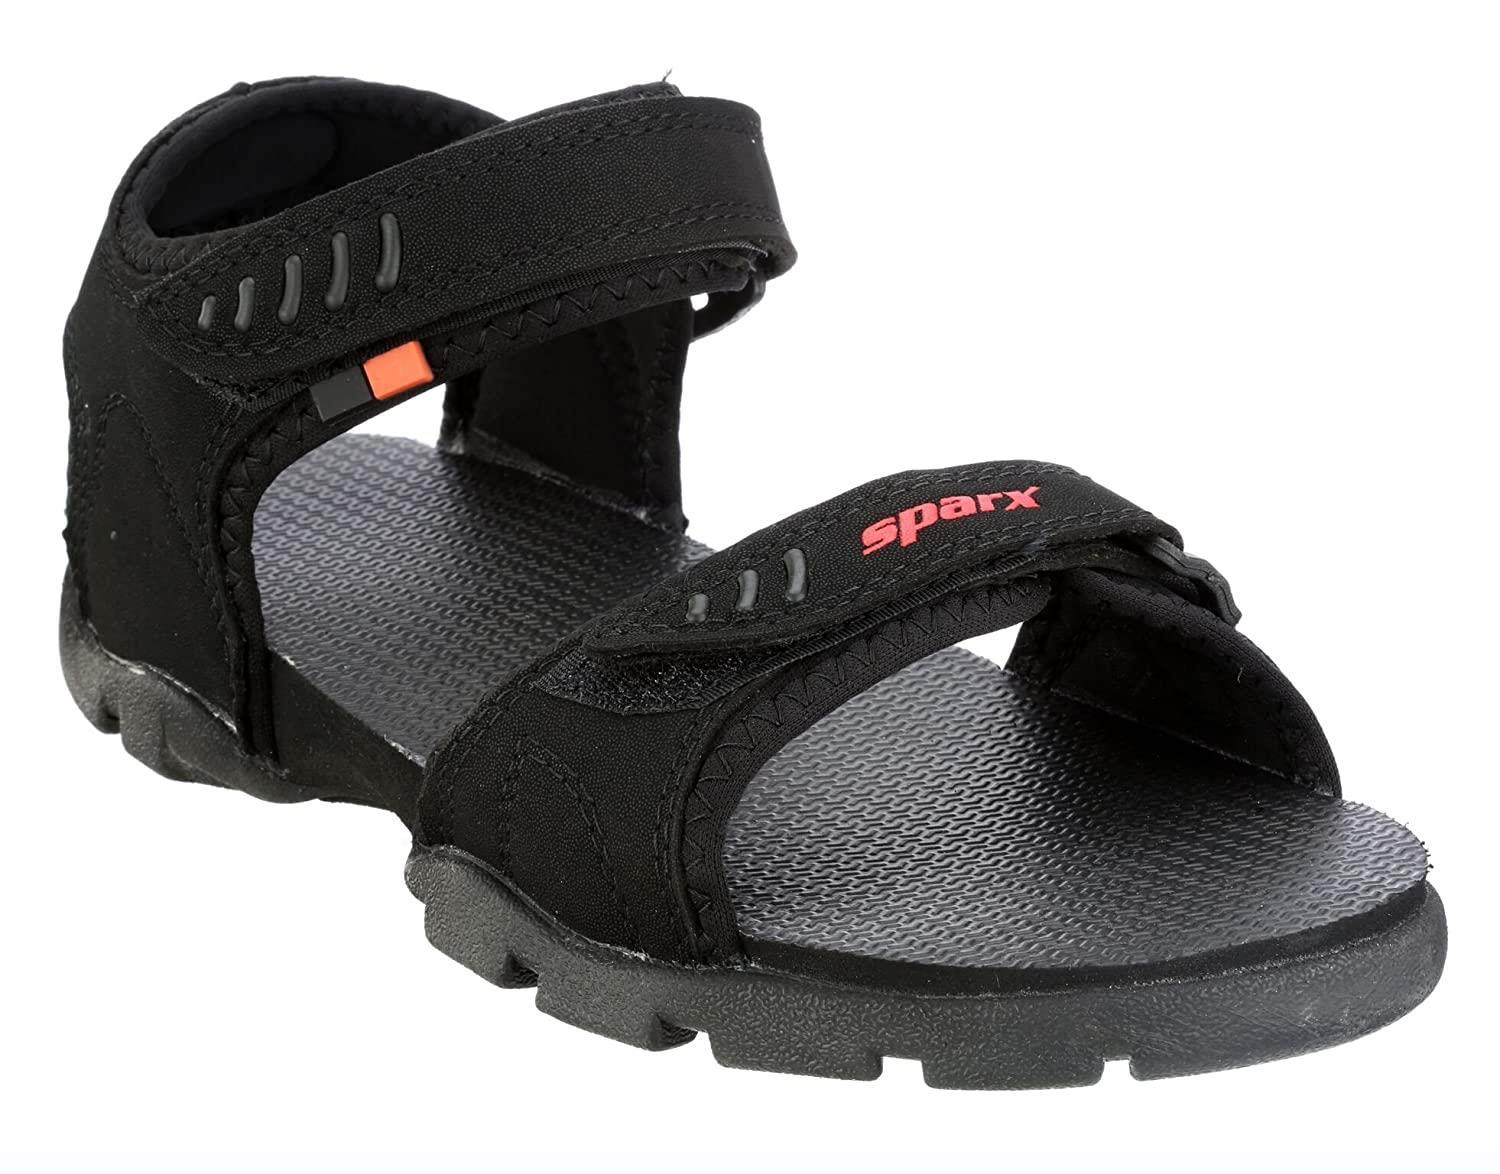 Buy Sandals for men SS 713 - Sandals & Slippers for Men | Relaxo